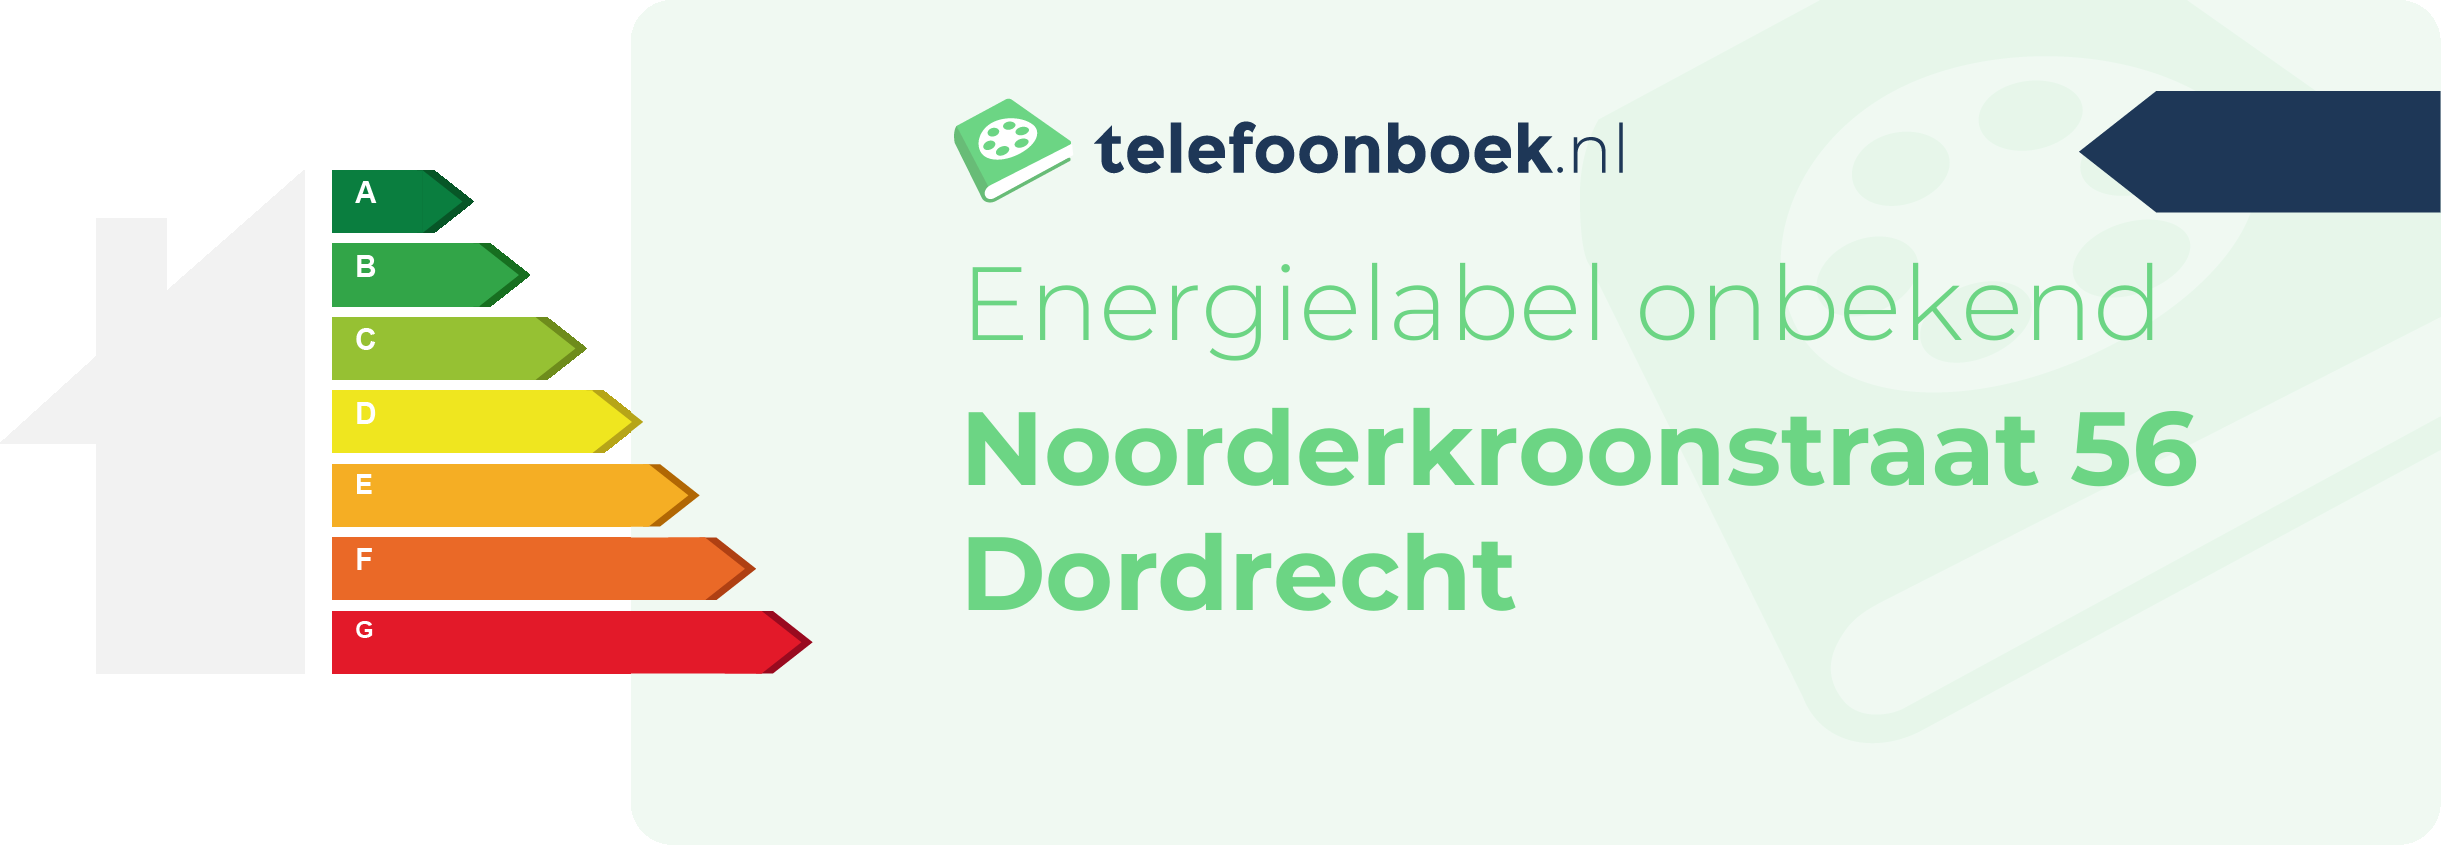 Energielabel Noorderkroonstraat 56 Dordrecht